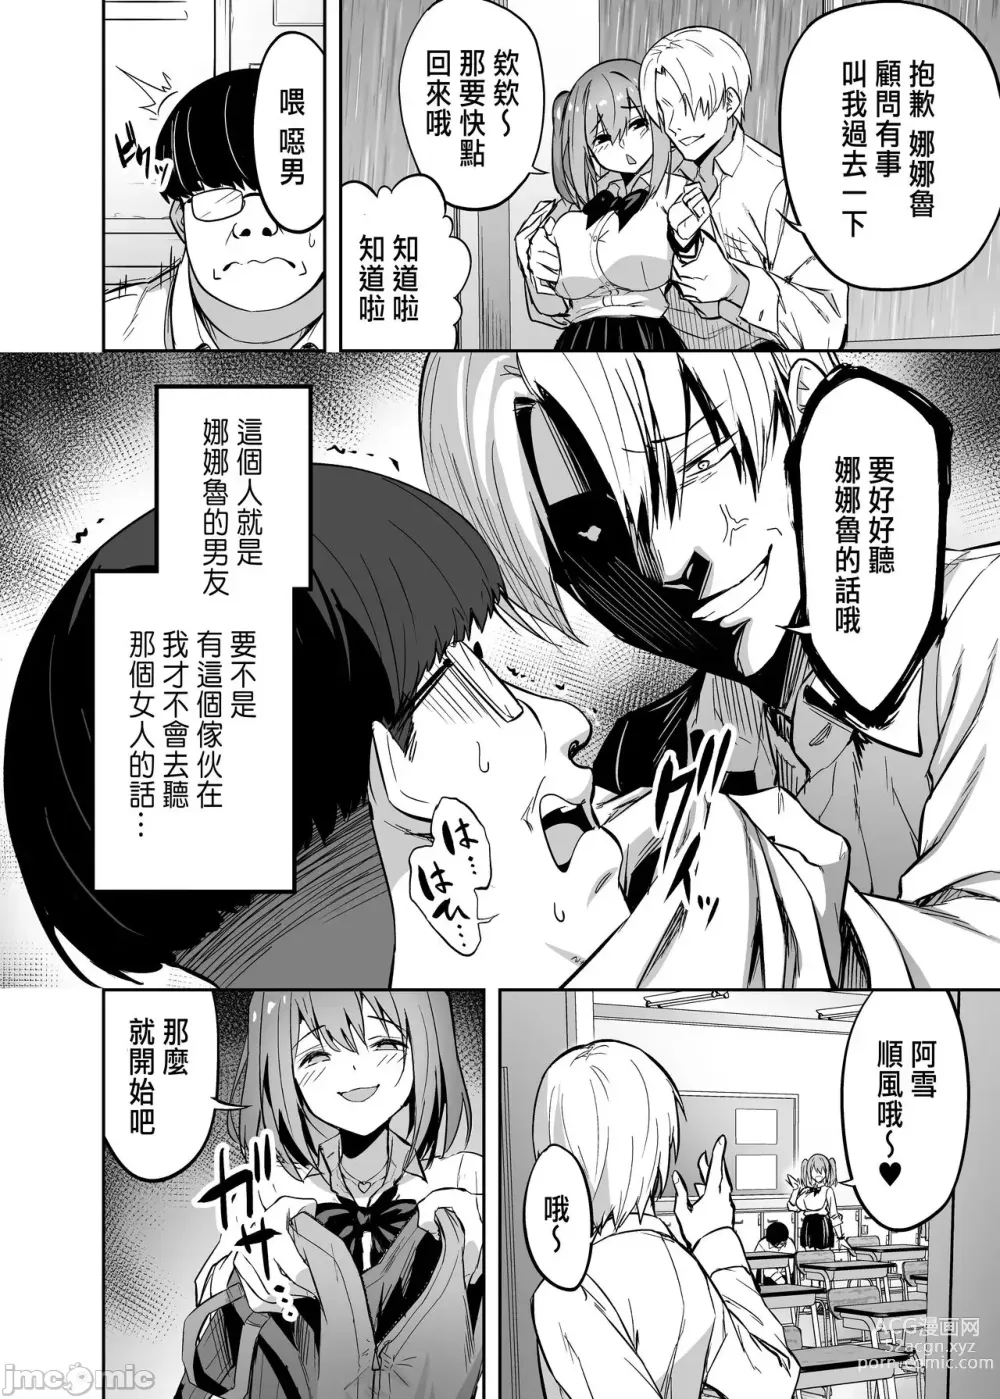 Page 7 of manga 把囂張狂妄的辣妹變成魅魔來懲罰1+1.5+2